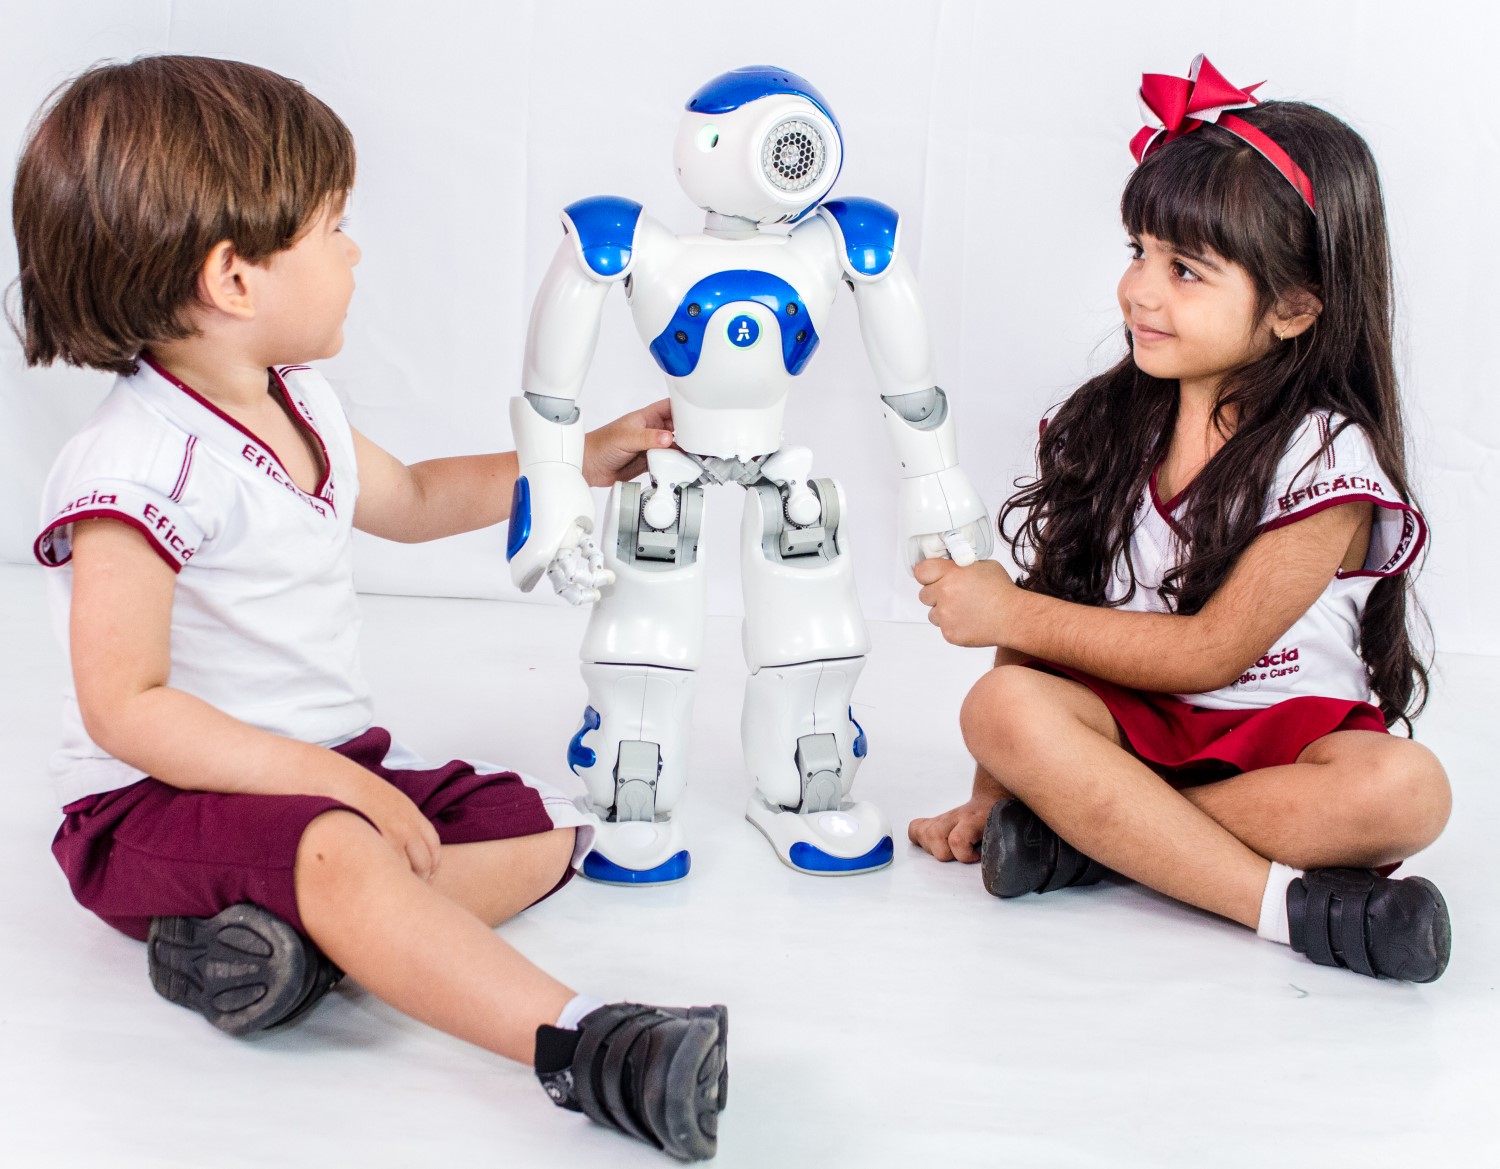 Duas crianças com uniforme do Eficácia (um menino e uma menina) interagem com um robô branco e azul utilizado, normalmente, em aulas de robótica educacional.